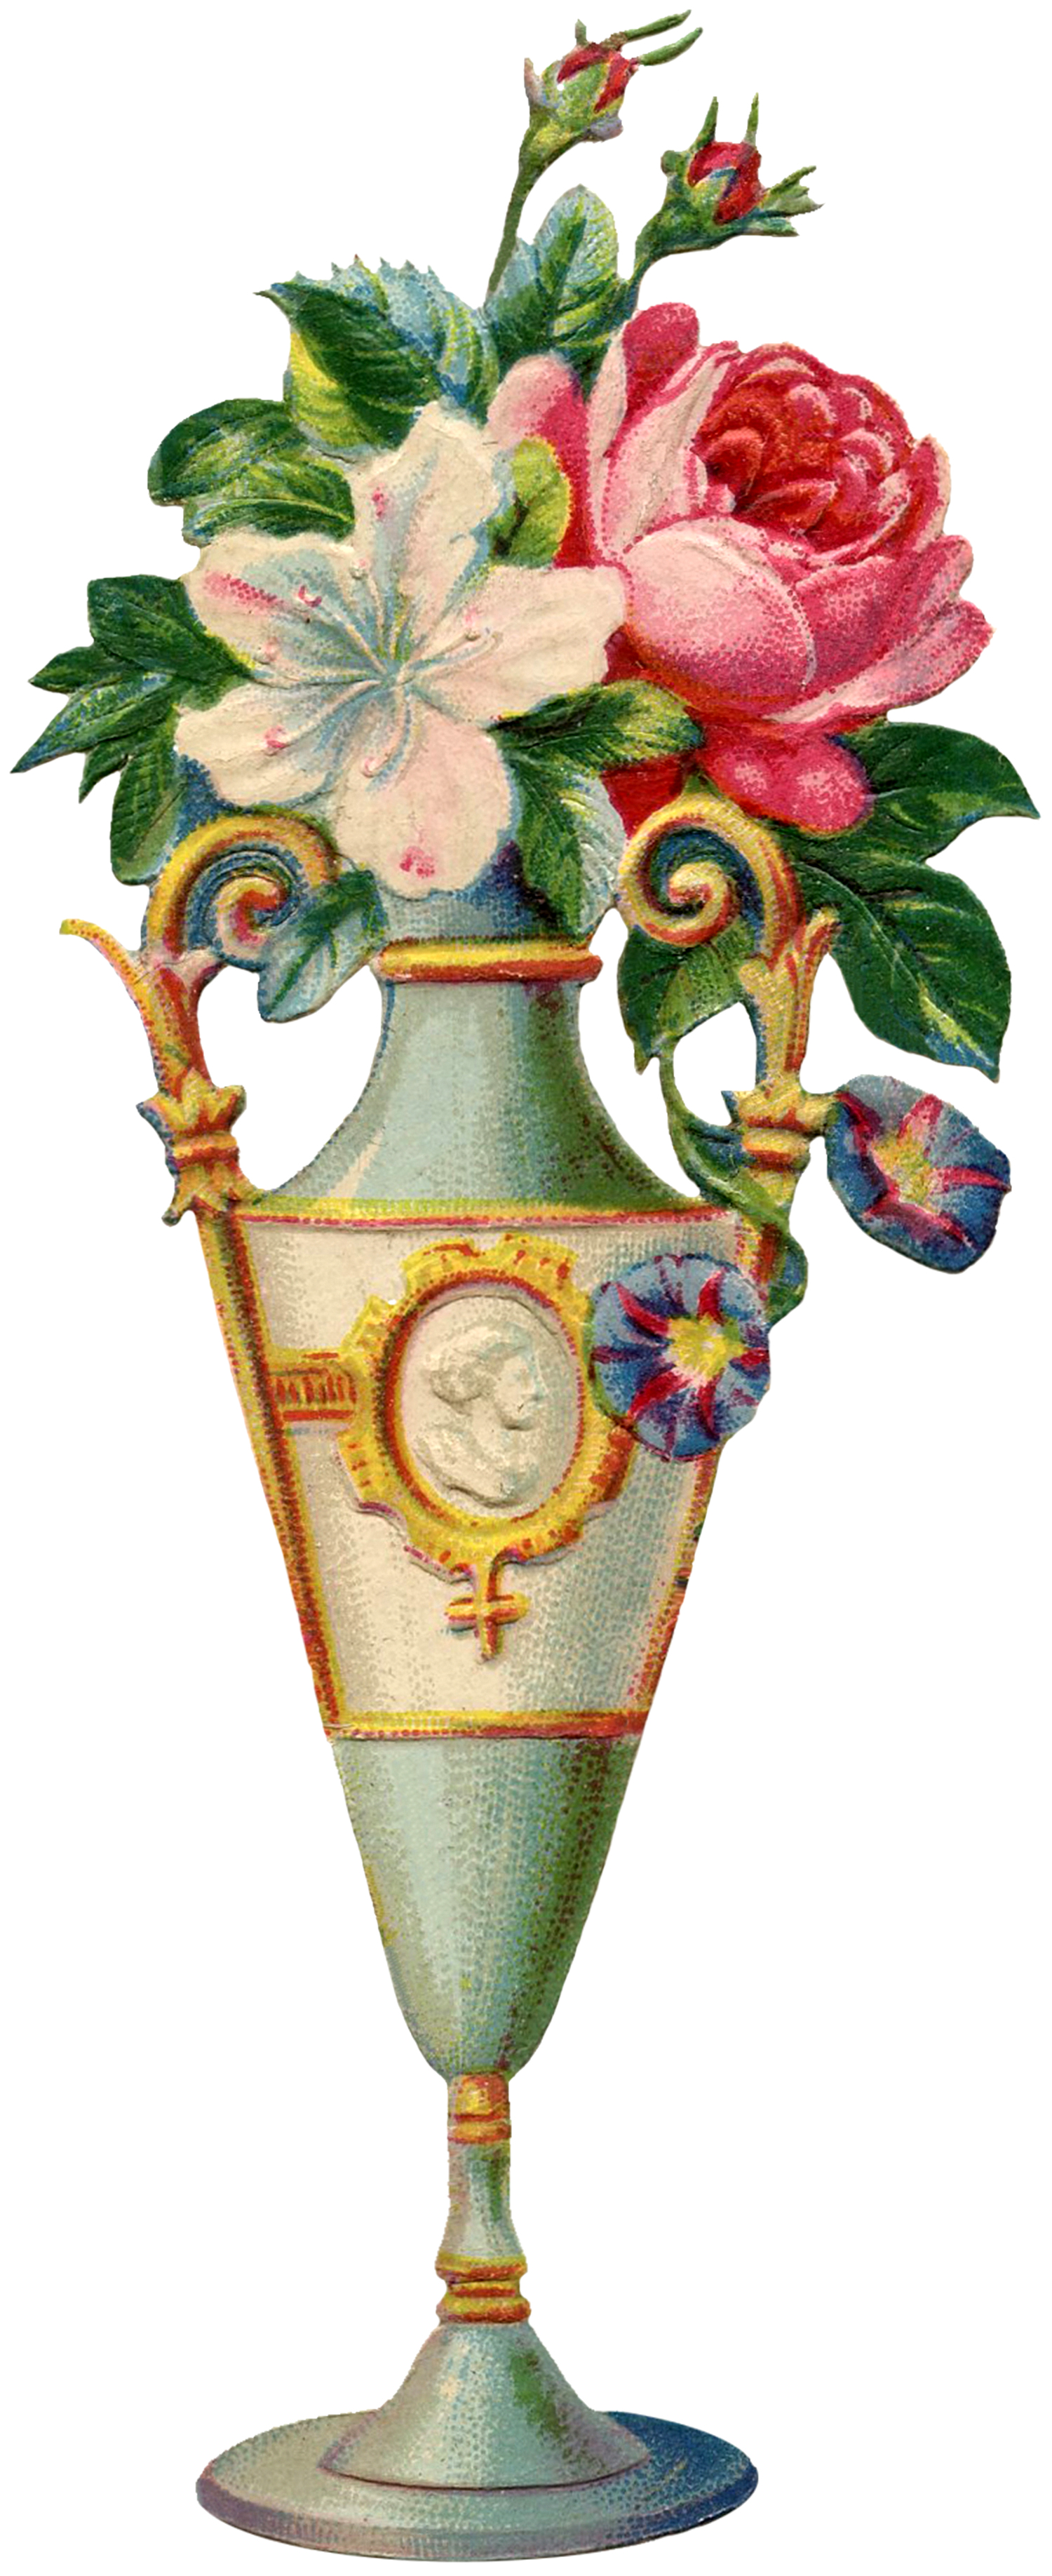 Floral Vase Image.